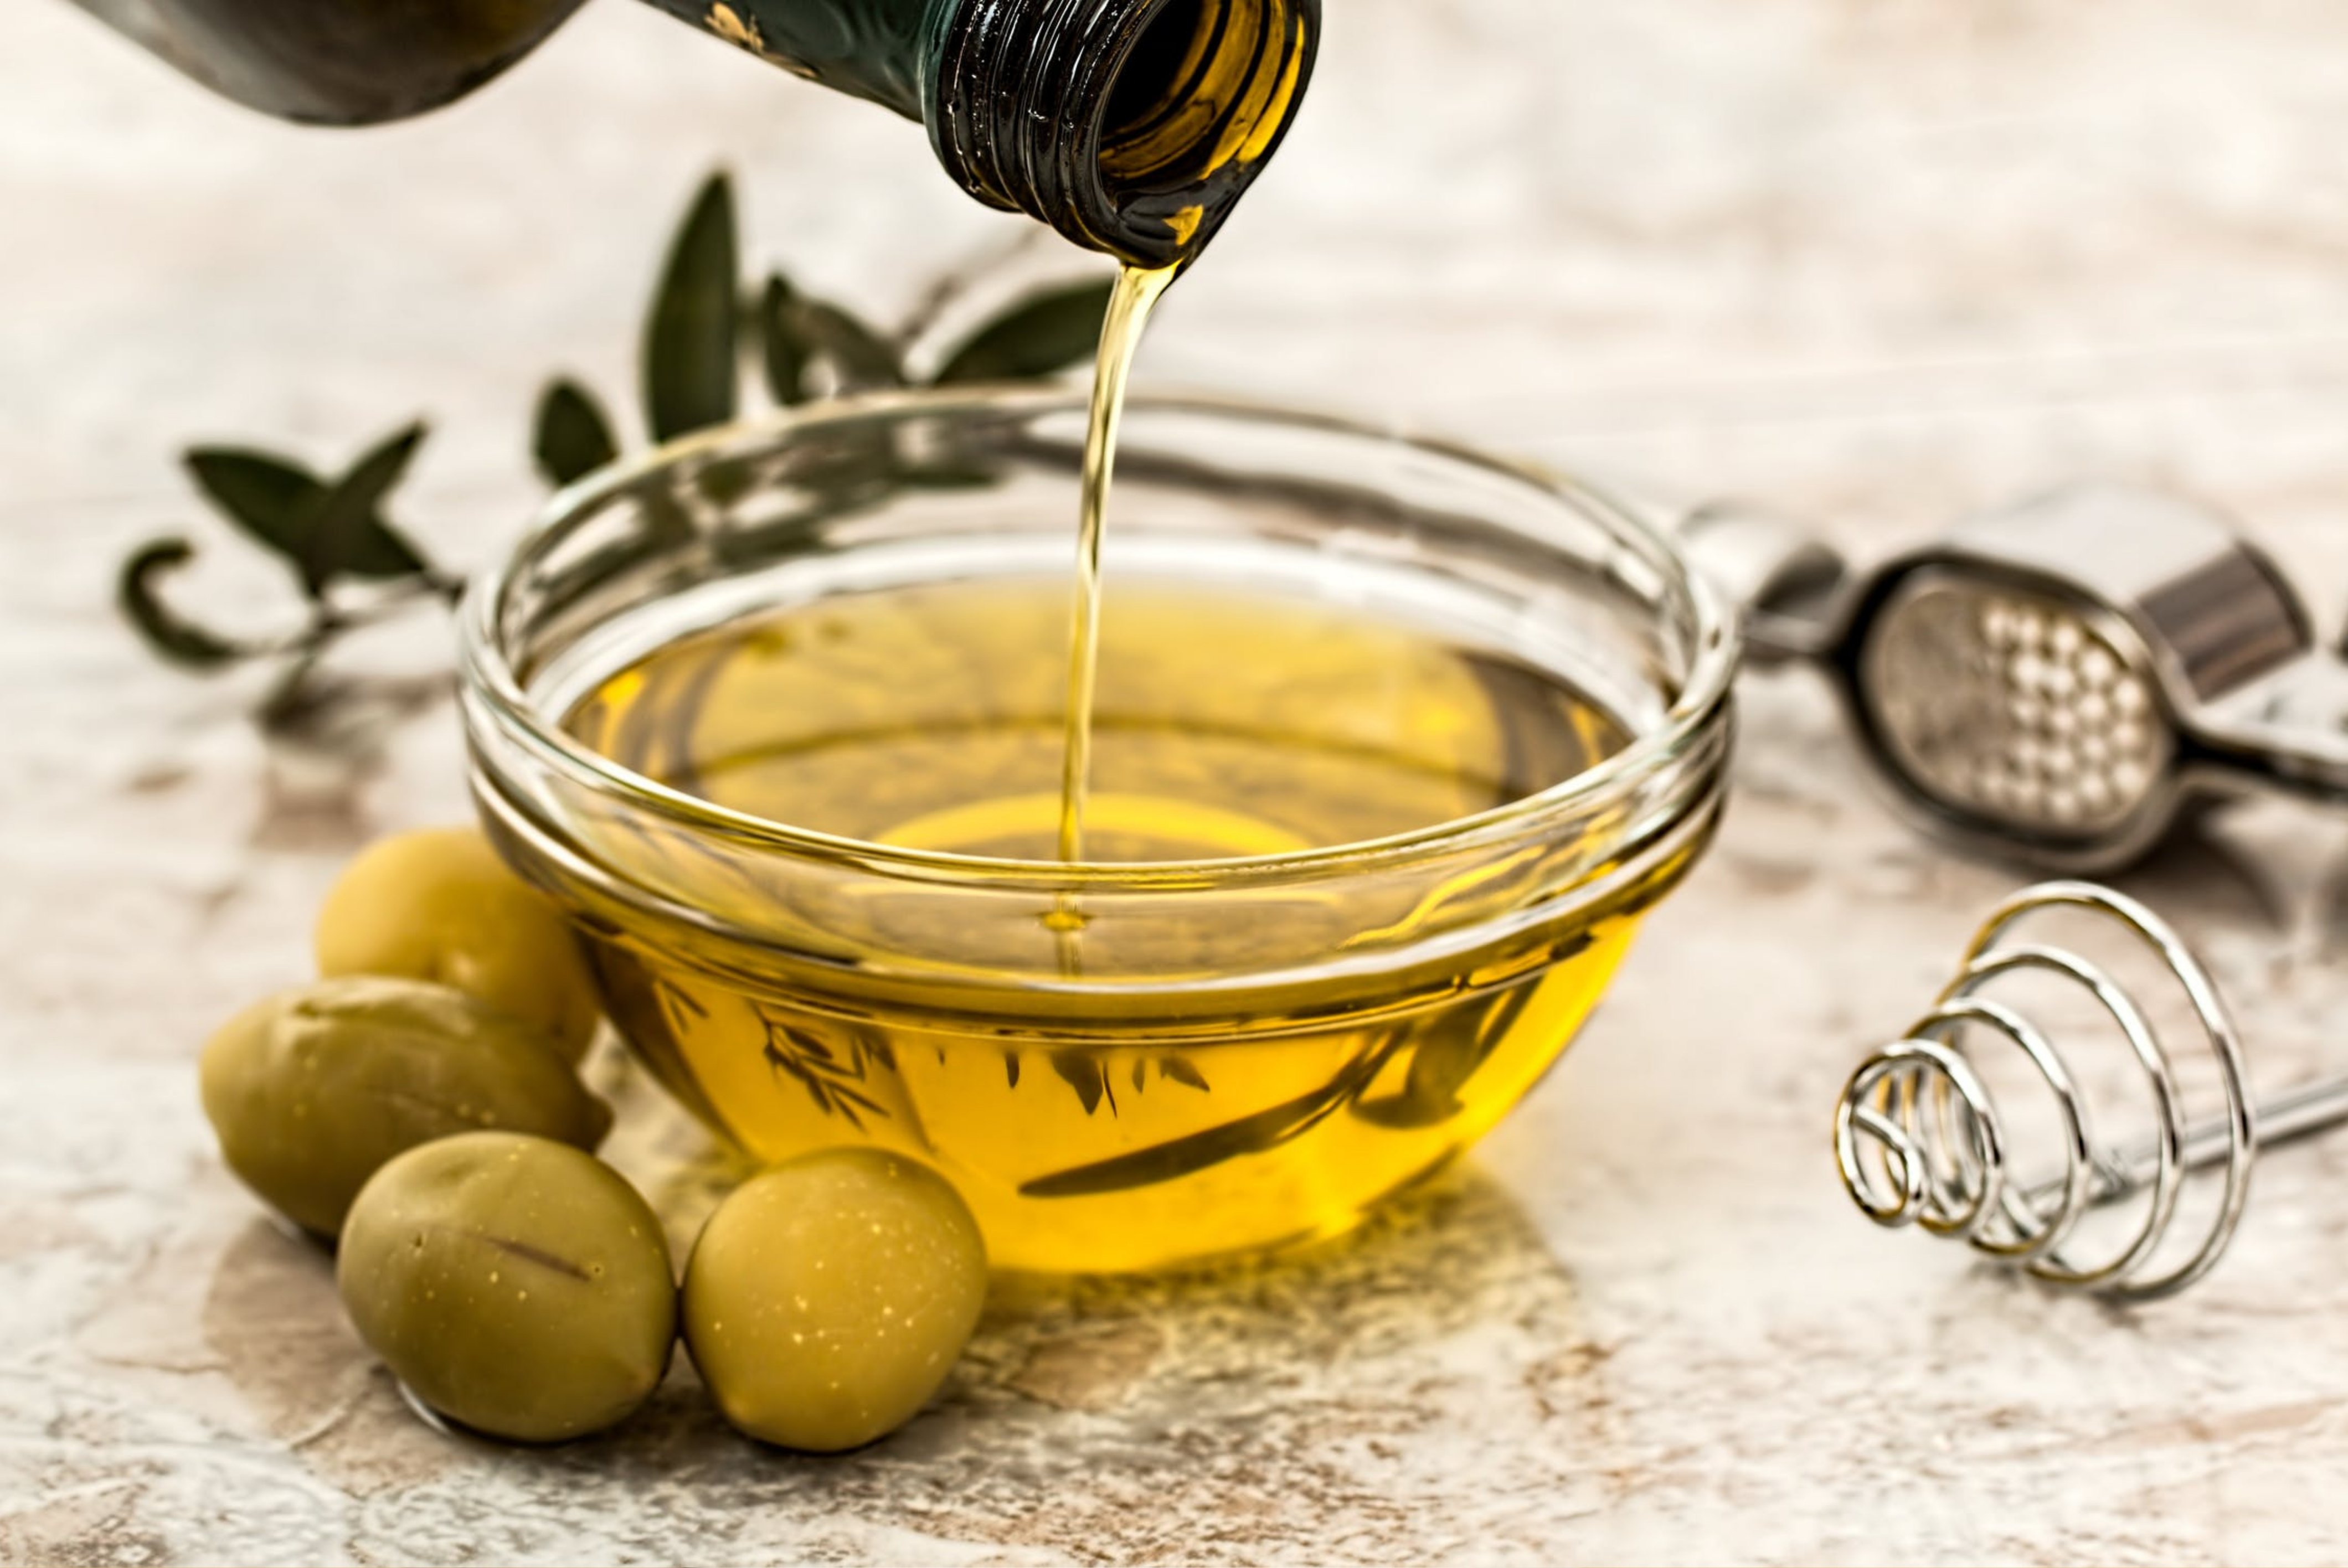 Best Turkish Bulk Olive Oil- Extra Virgin Olive Oil